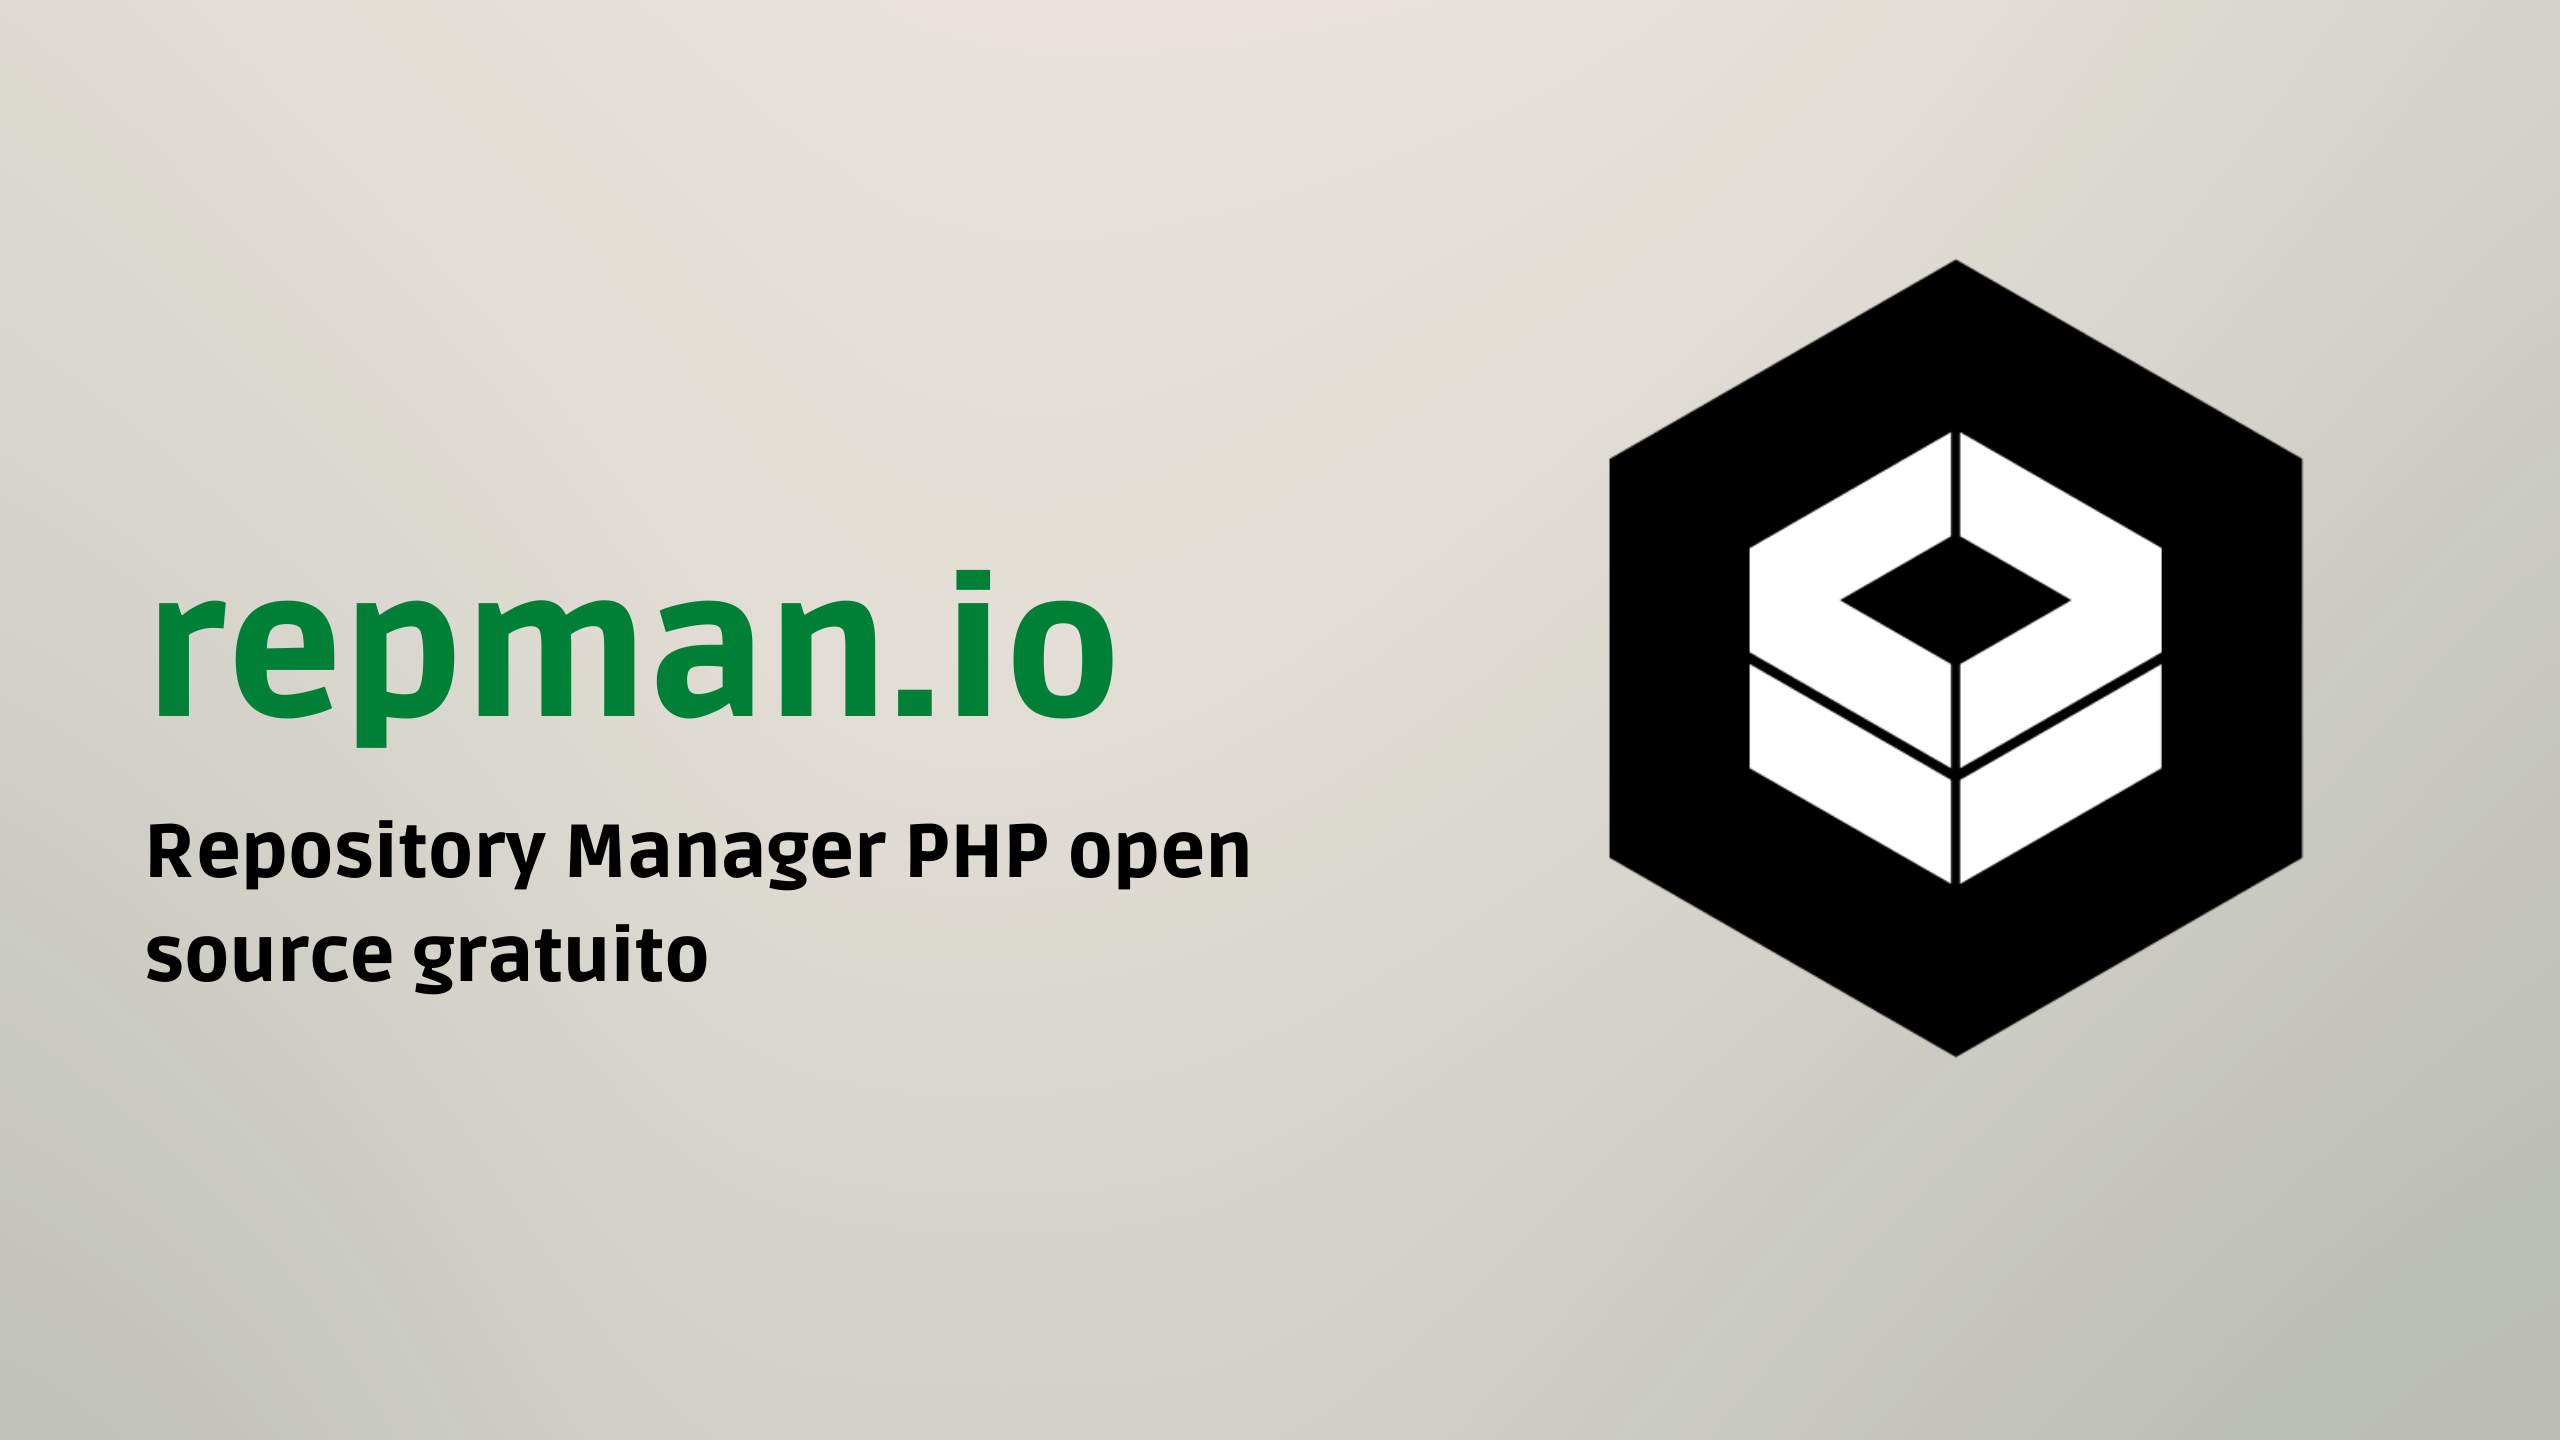 Repman.io - PHP Repository Manager privato, gratuito ed open source